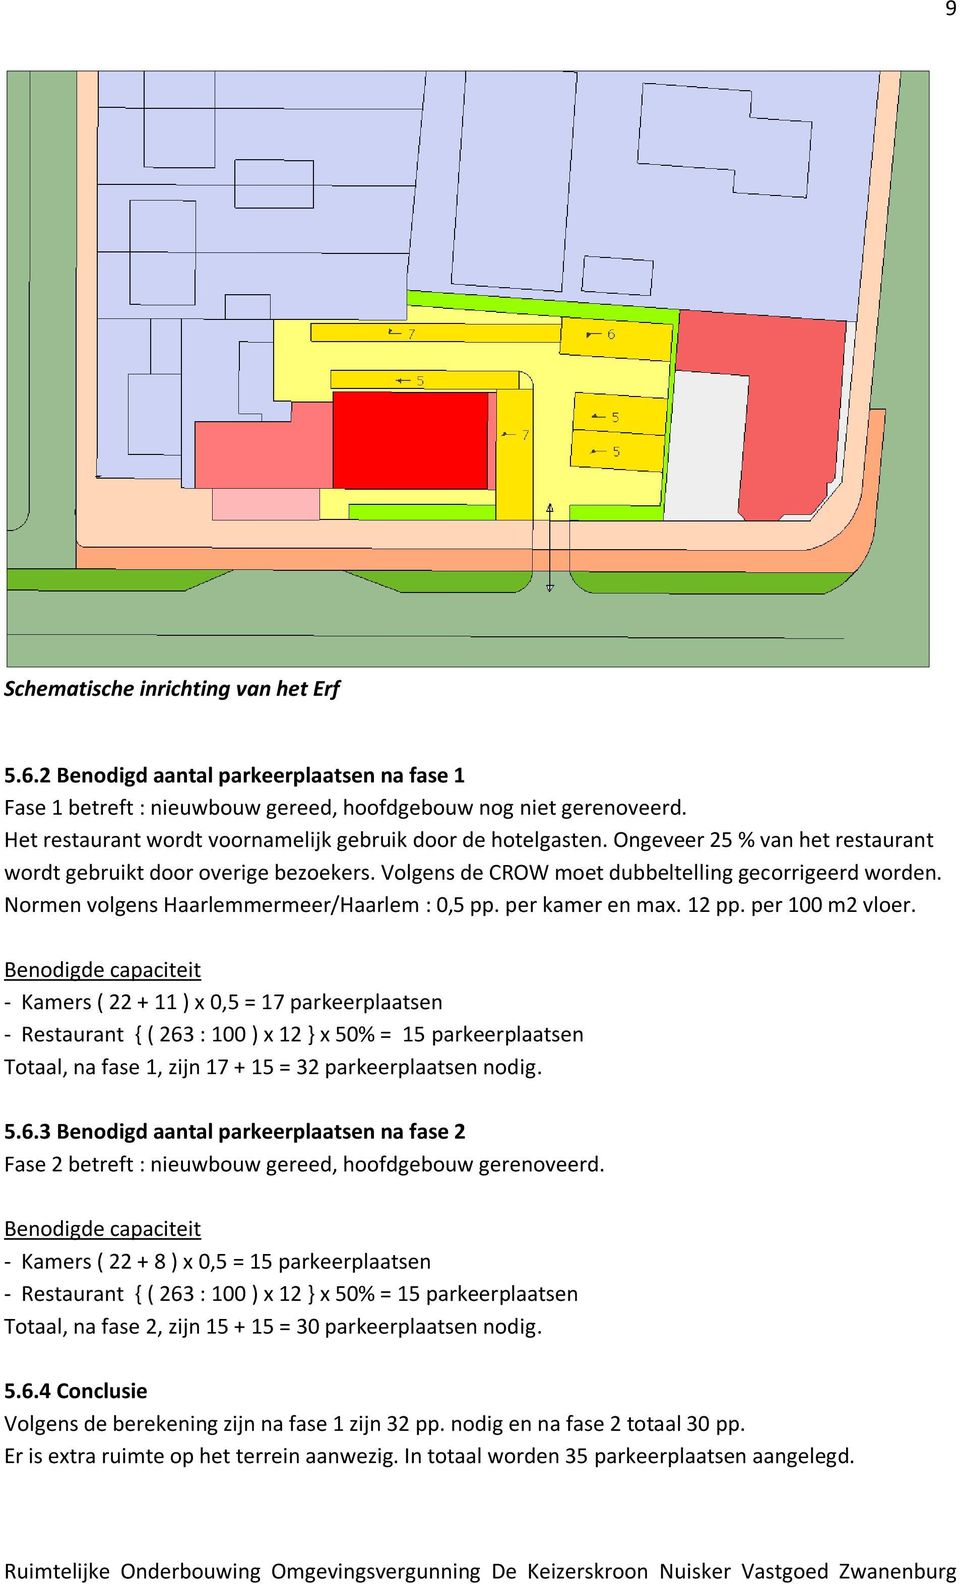 Normen volgens Haarlemmermeer/Haarlem : 0,5 pp. per kamer en max. 12 pp. per 100 m2 vloer.